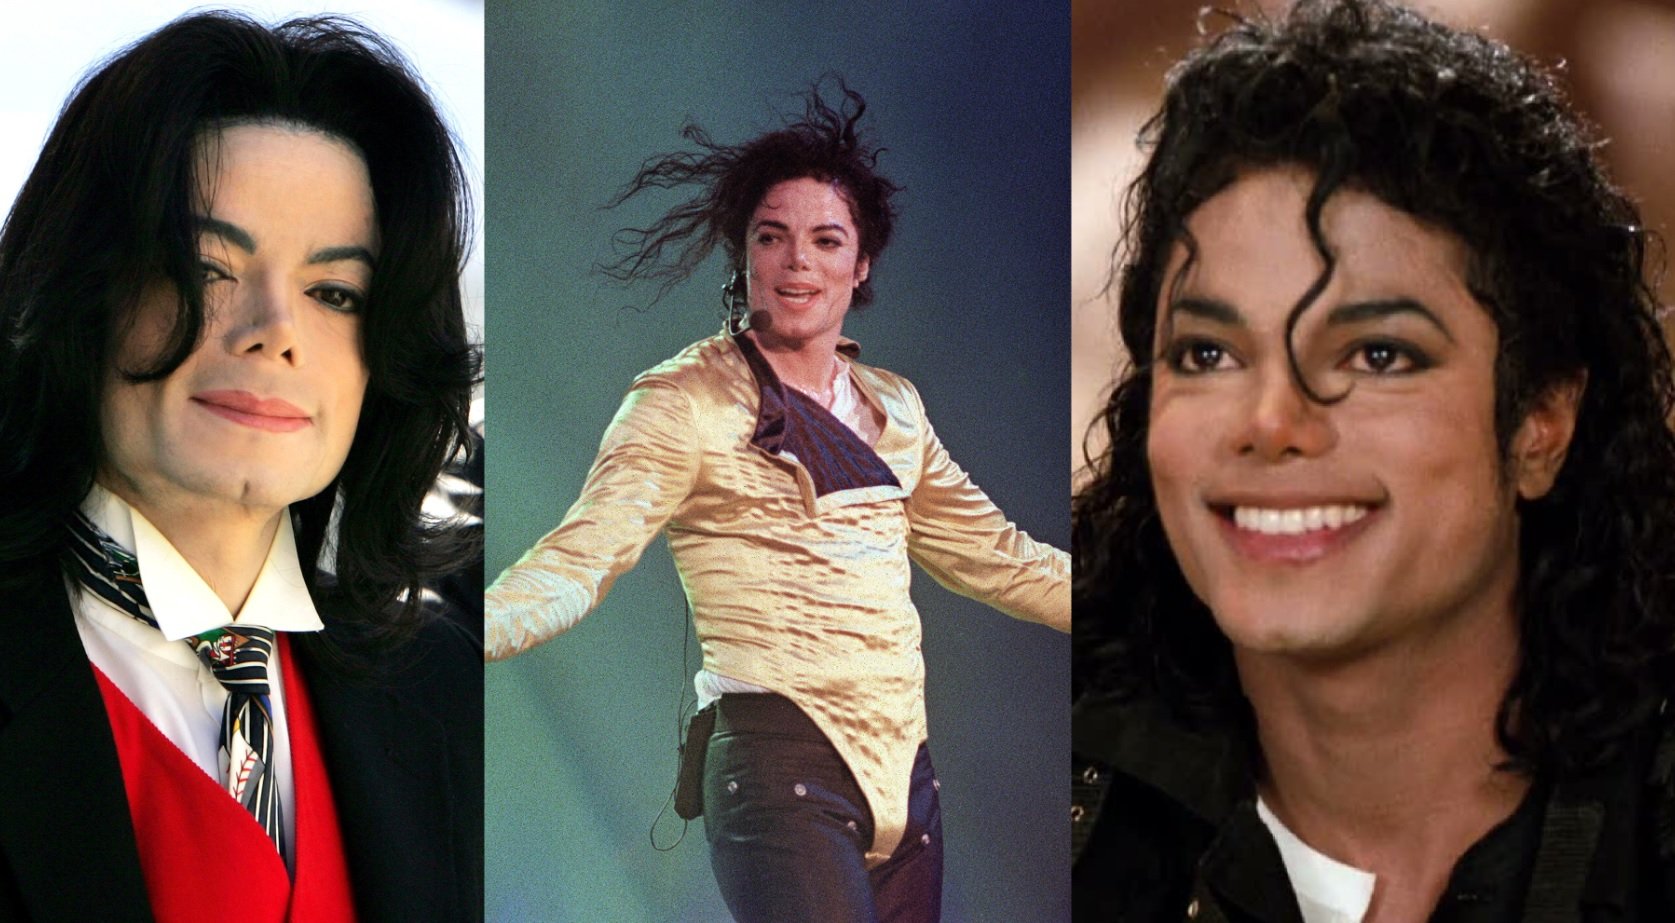 Michael Jackson čelí vážnému obvinění, hájit se ale nemůže